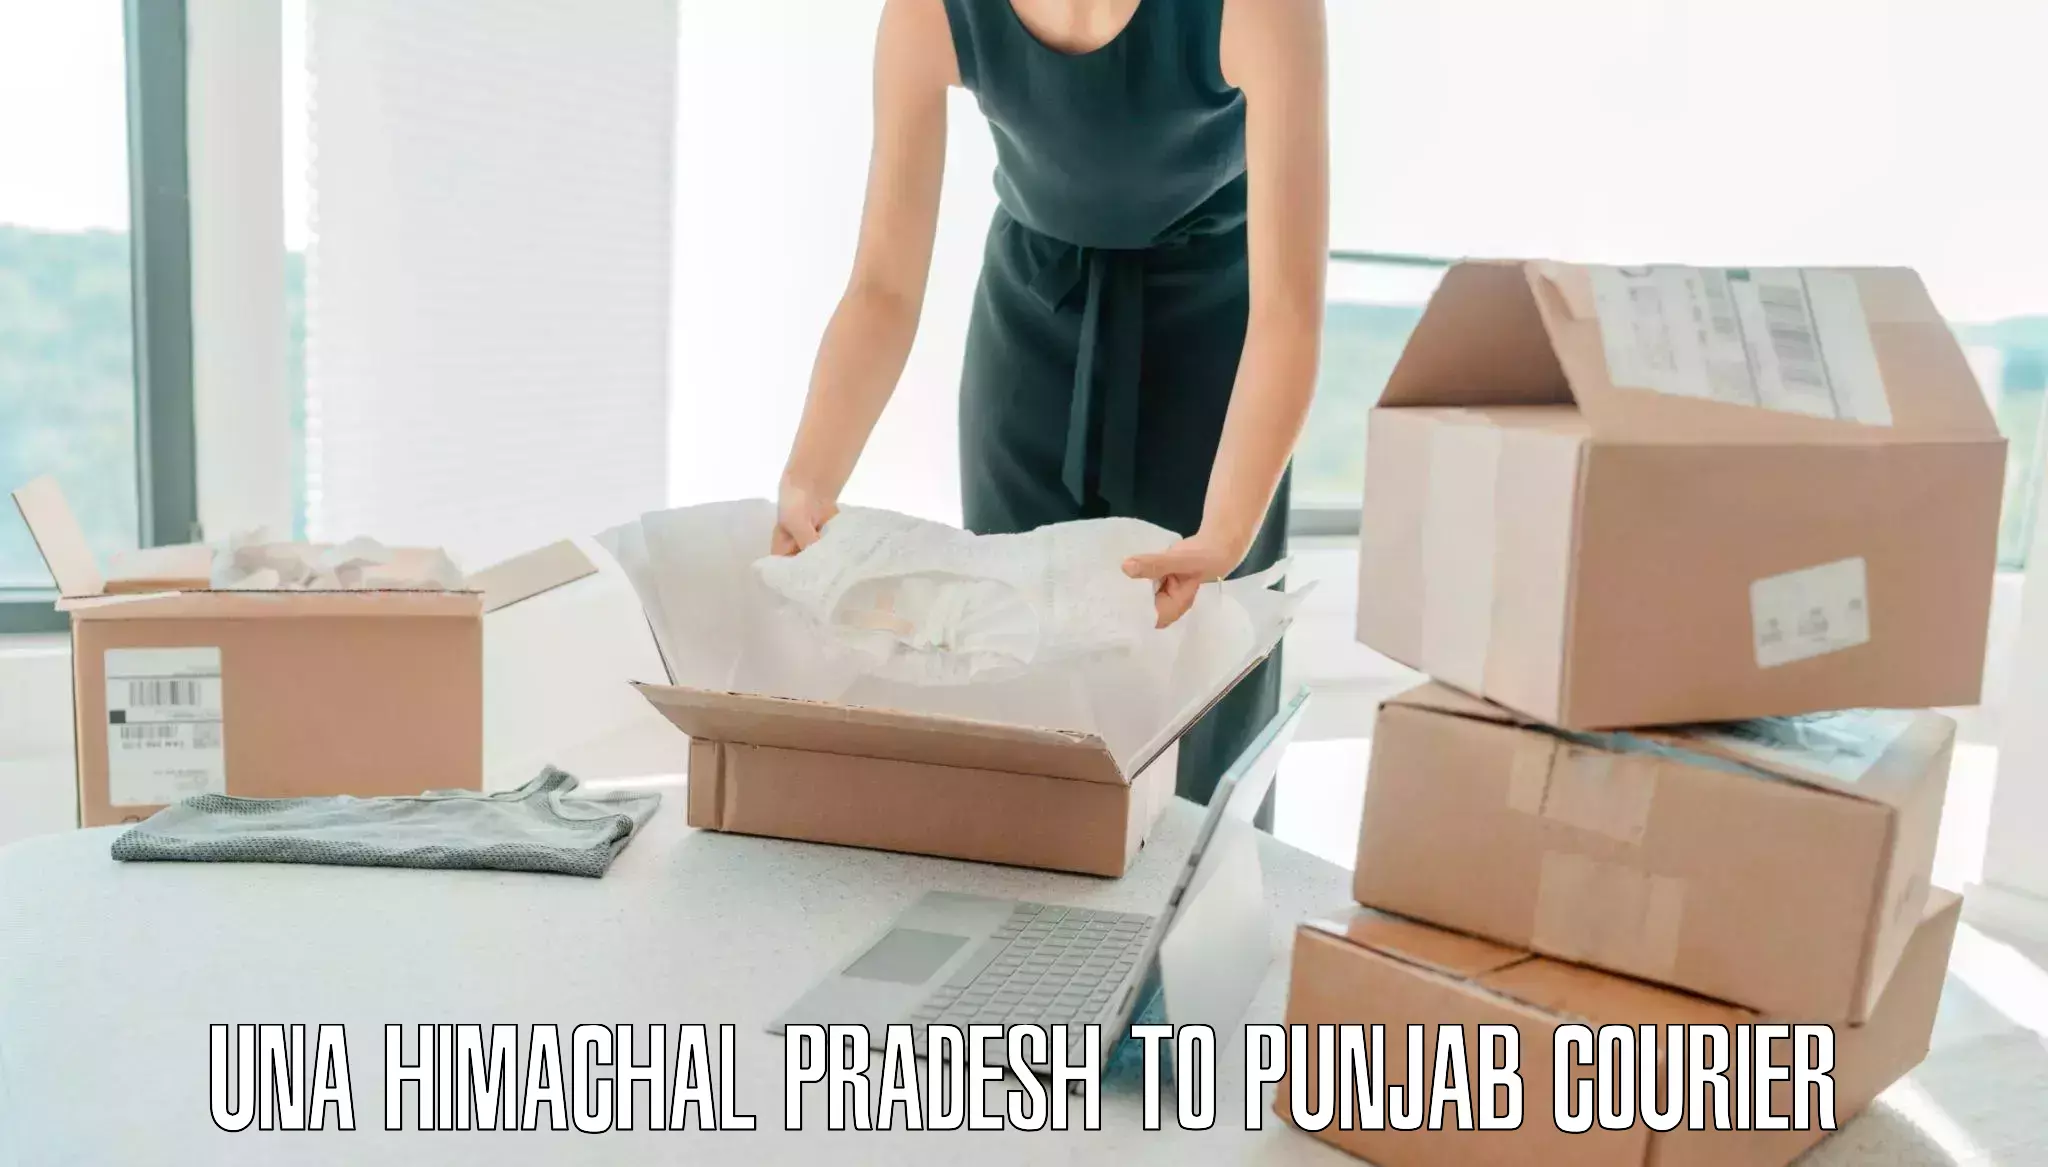 Luggage delivery calculator Una Himachal Pradesh to Punjab